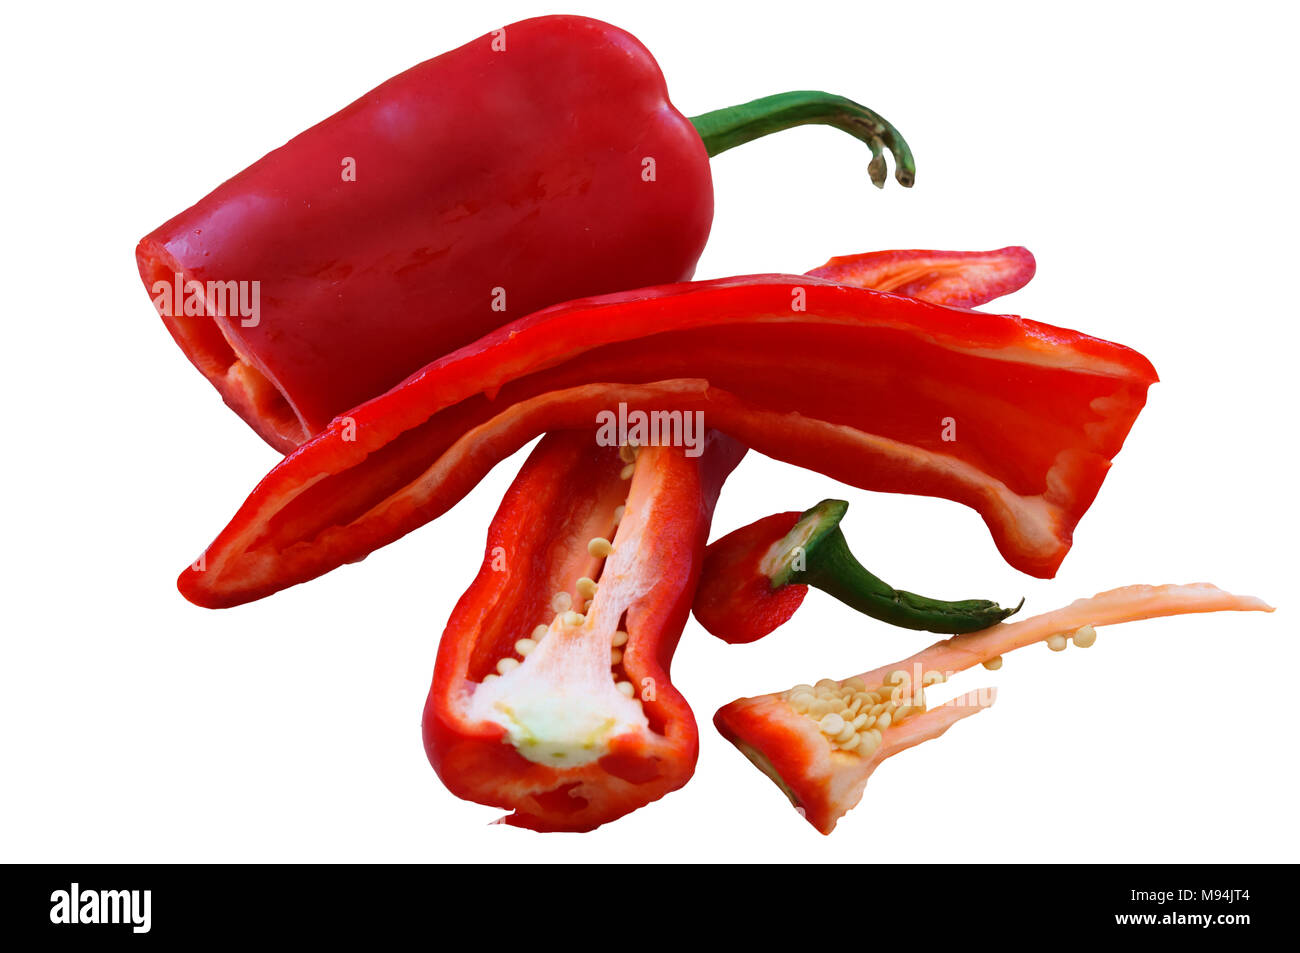 Vegetali lungo rosso pepe, affettato rosso bulgaro peperone dolce o piccante Foto Stock